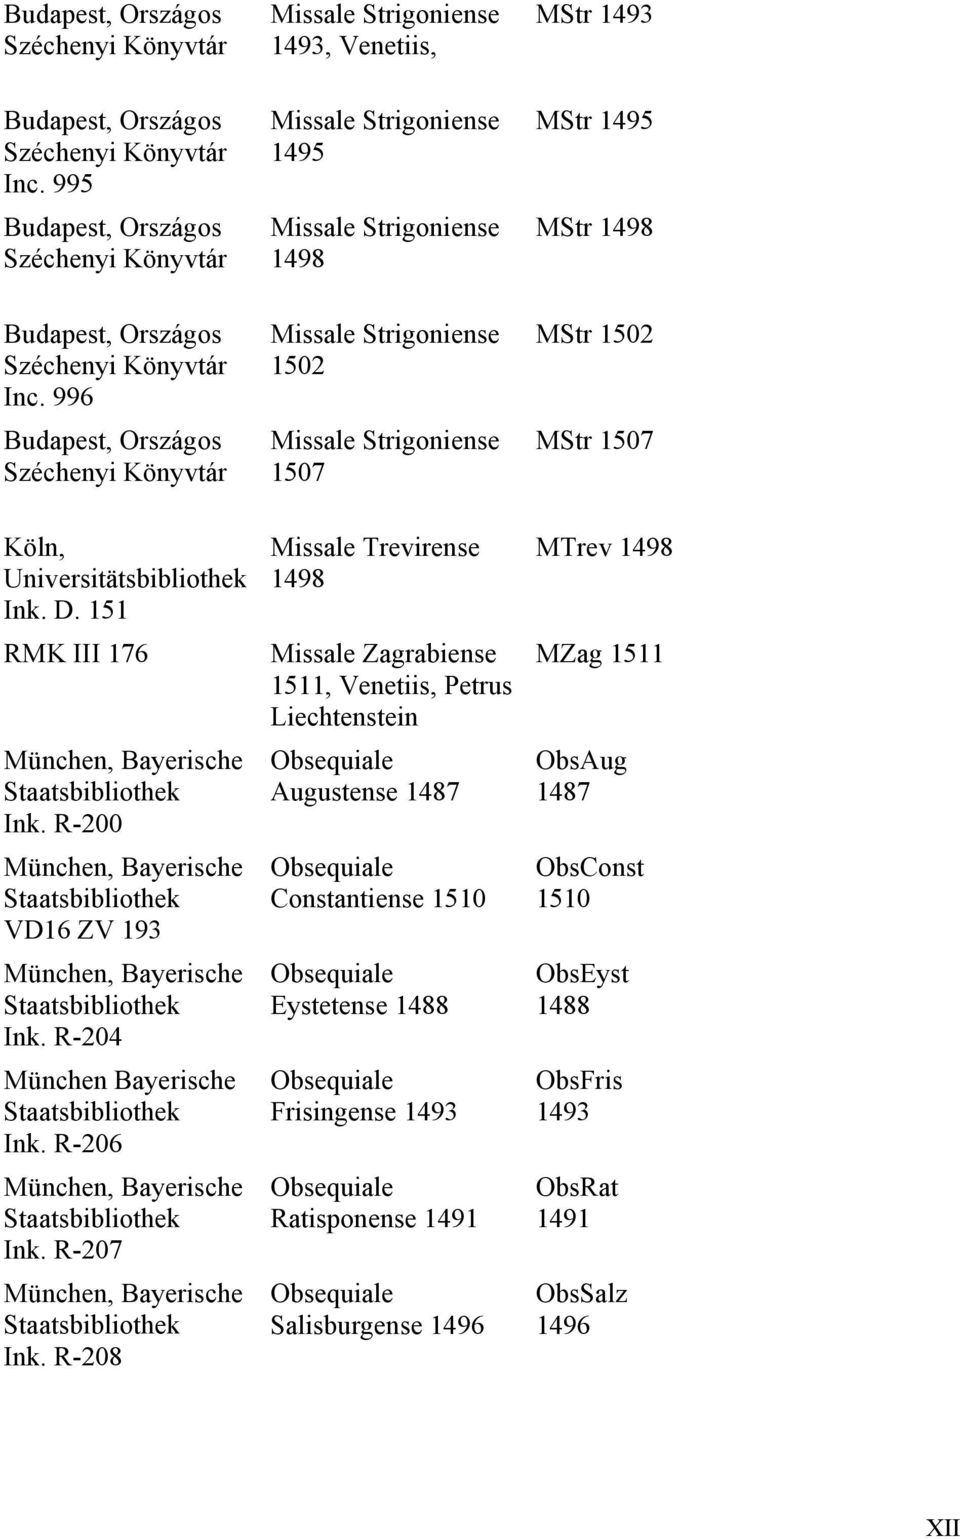 996 Budapest, Országos Széchenyi Könyvtár Missale Strigoniense 1502 Missale Strigoniense 1507 MStr 1502 MStr 1507 Köln, Universitätsbibliothek Ink. D.